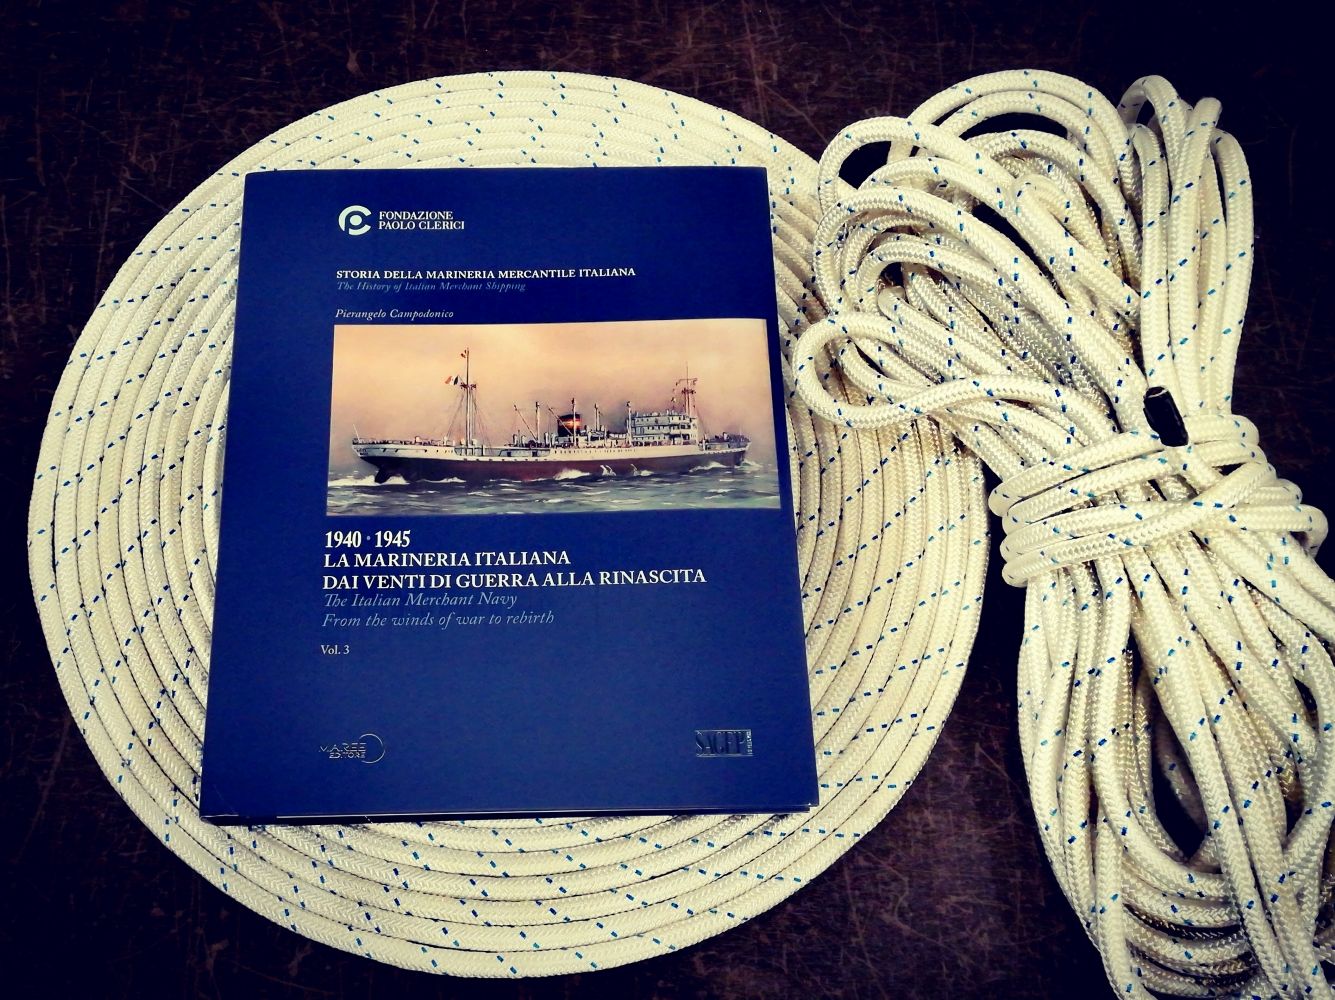 La storia della marineria mercantile italiana - Libri dal Blog del Mare